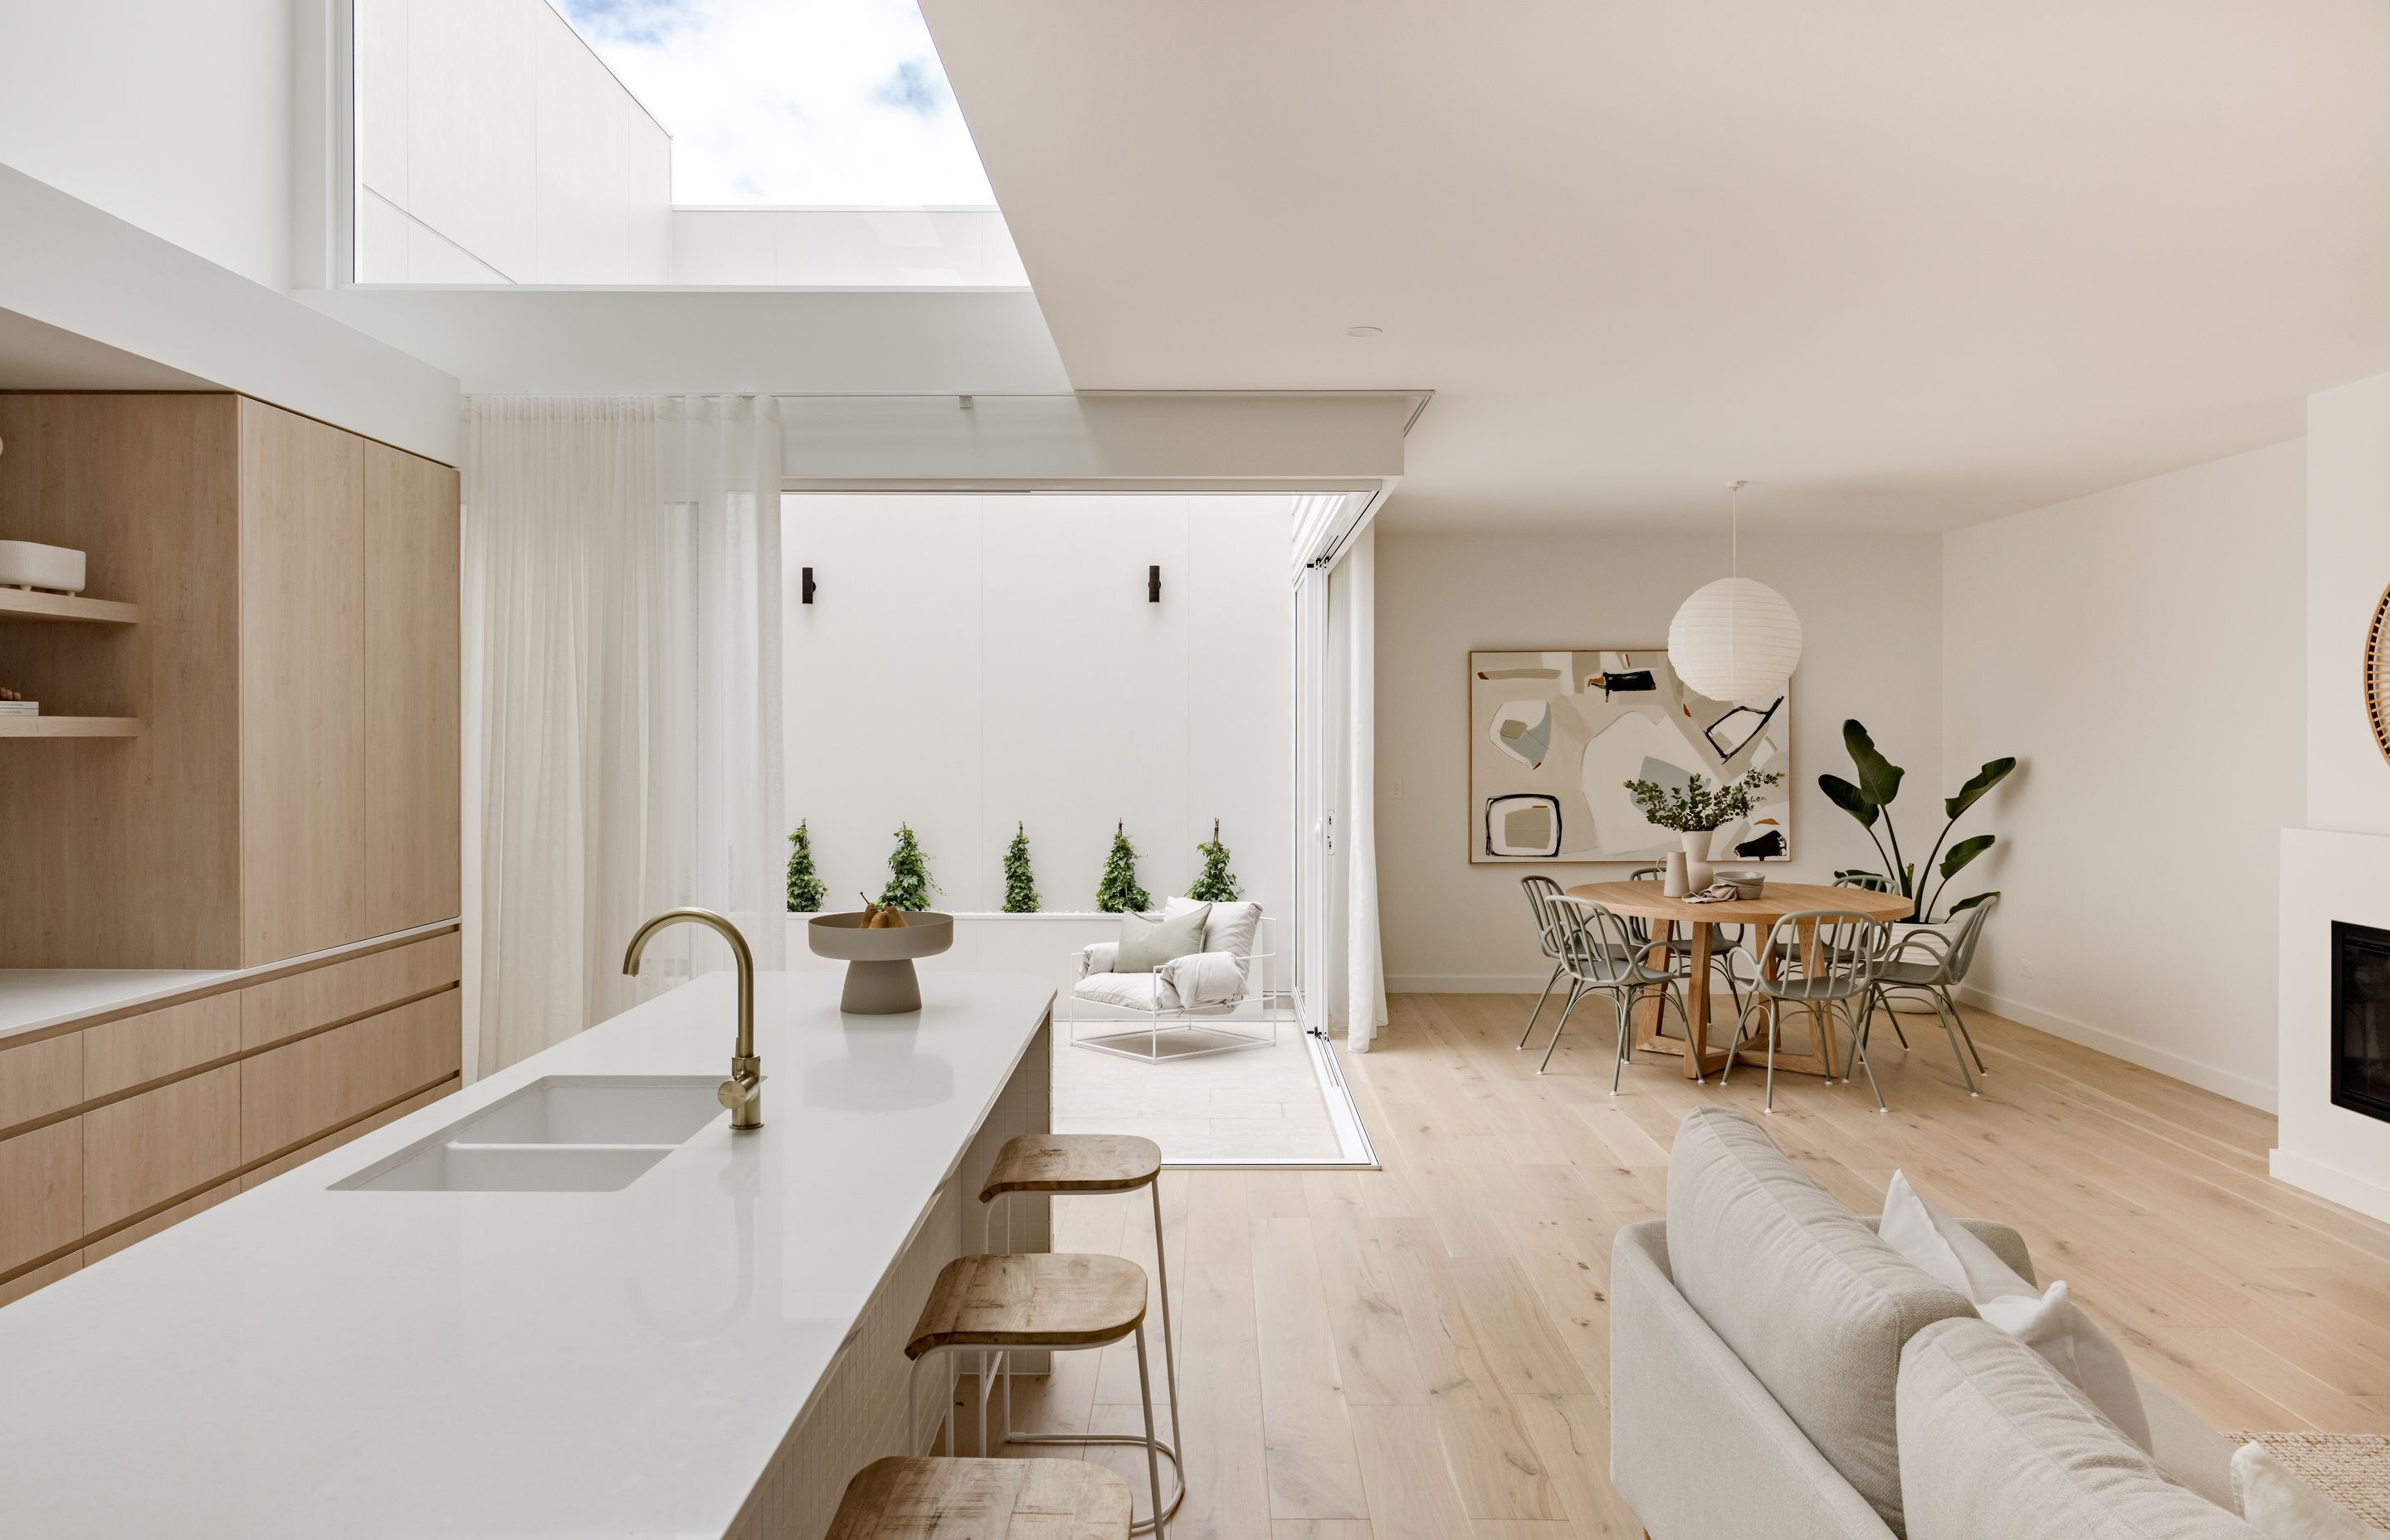 Duplex Design - Orton Haus 2.0